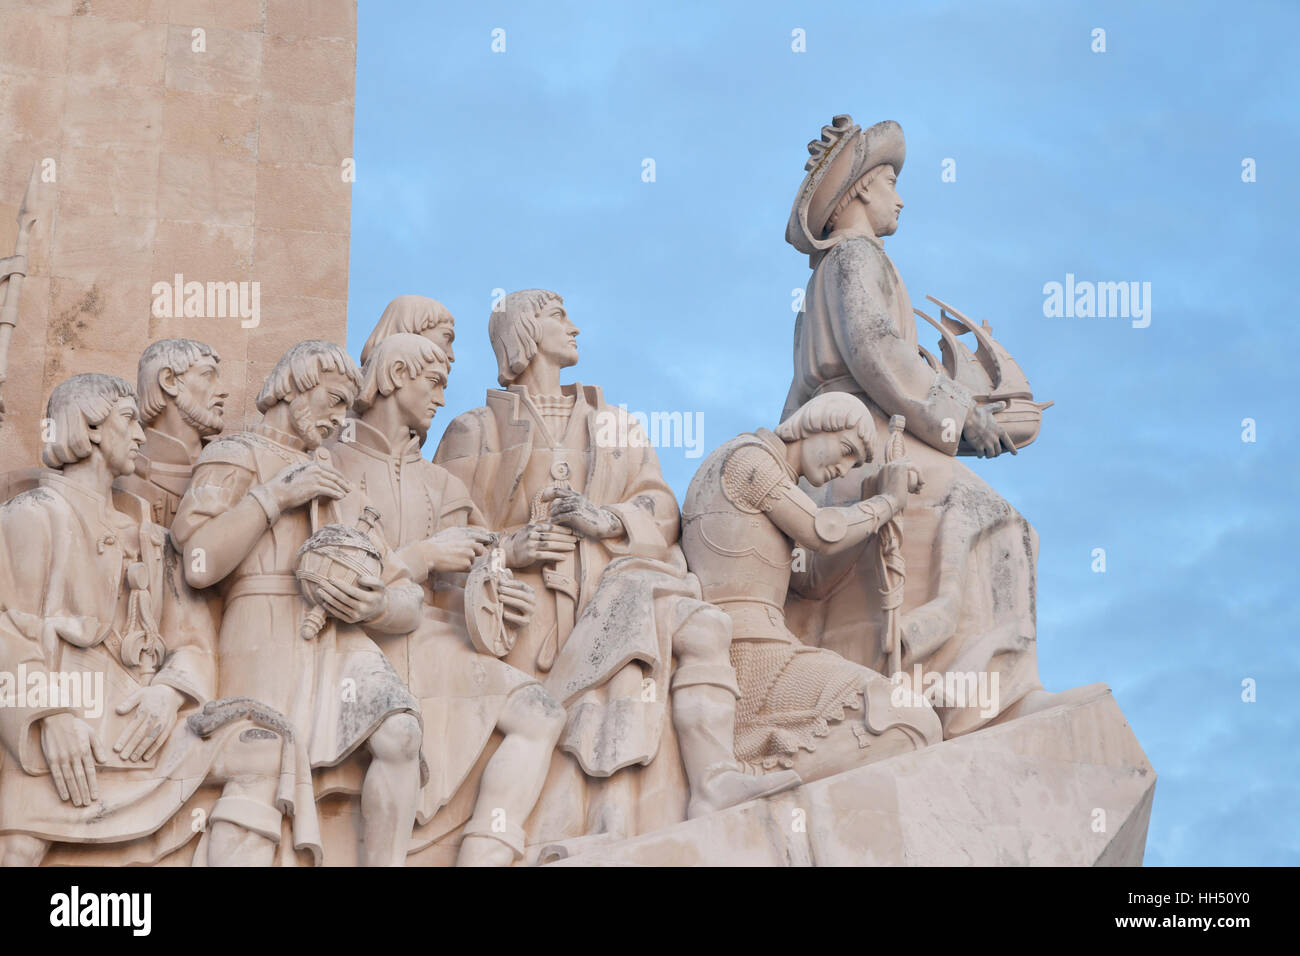 Lissabon, Portugal: Padrão Dos Descobrimentos Denkmal für die portugiesischen Zeitalter der Entdeckungen im 15. und 16. Jahrhundert. Stockfoto